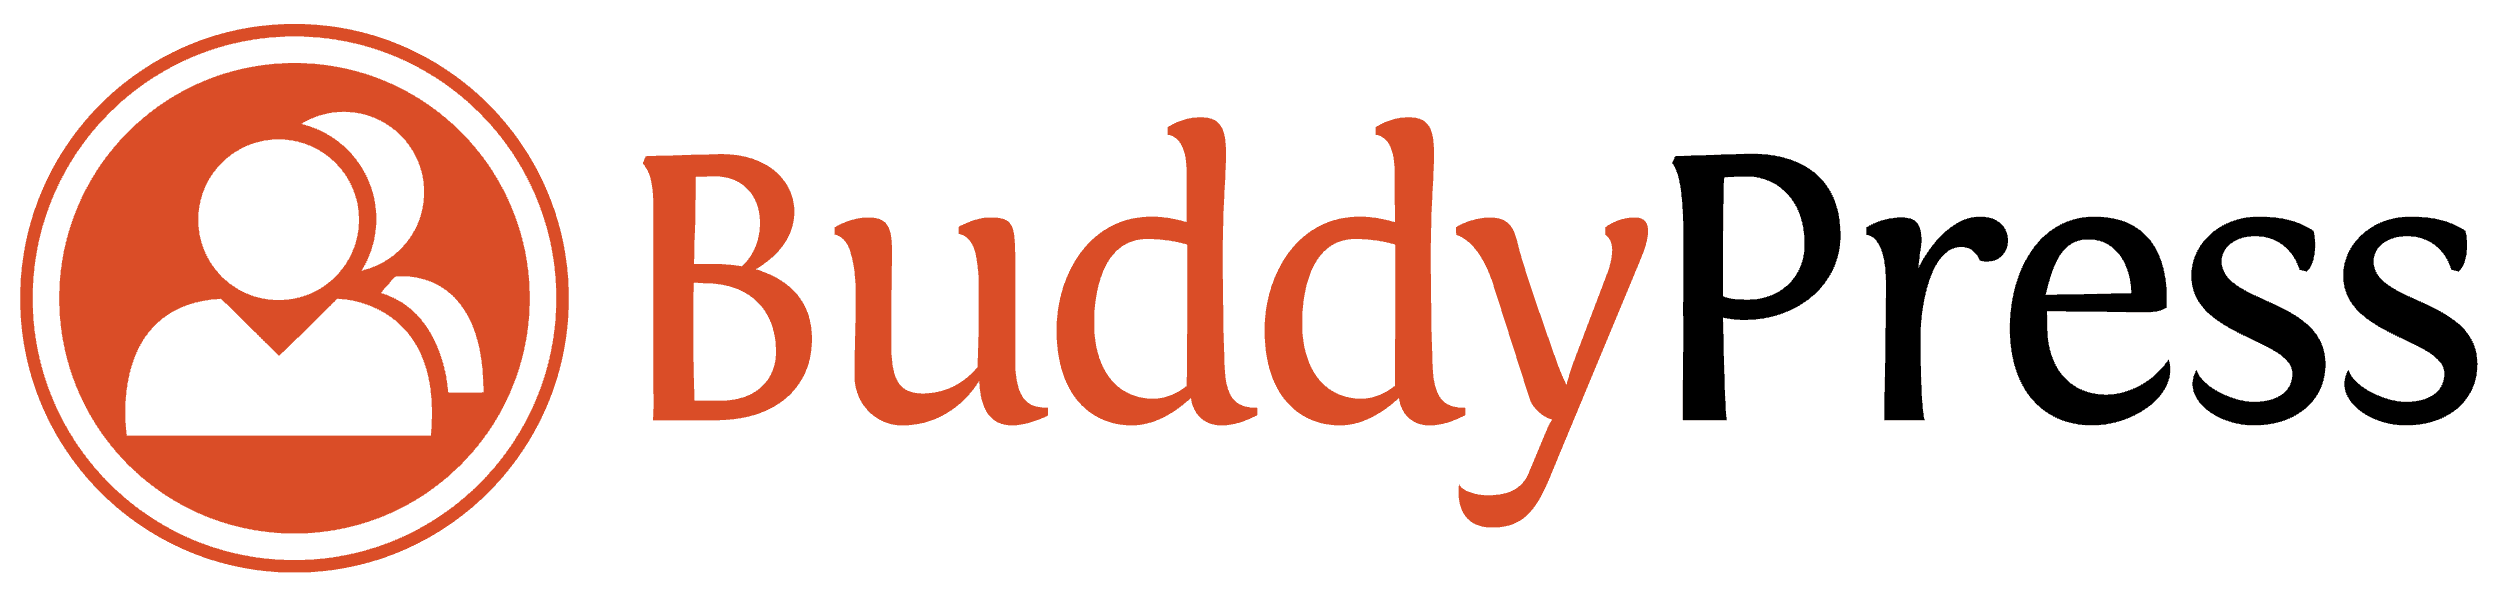 BuddyPress - Réseau social pour Wordpress